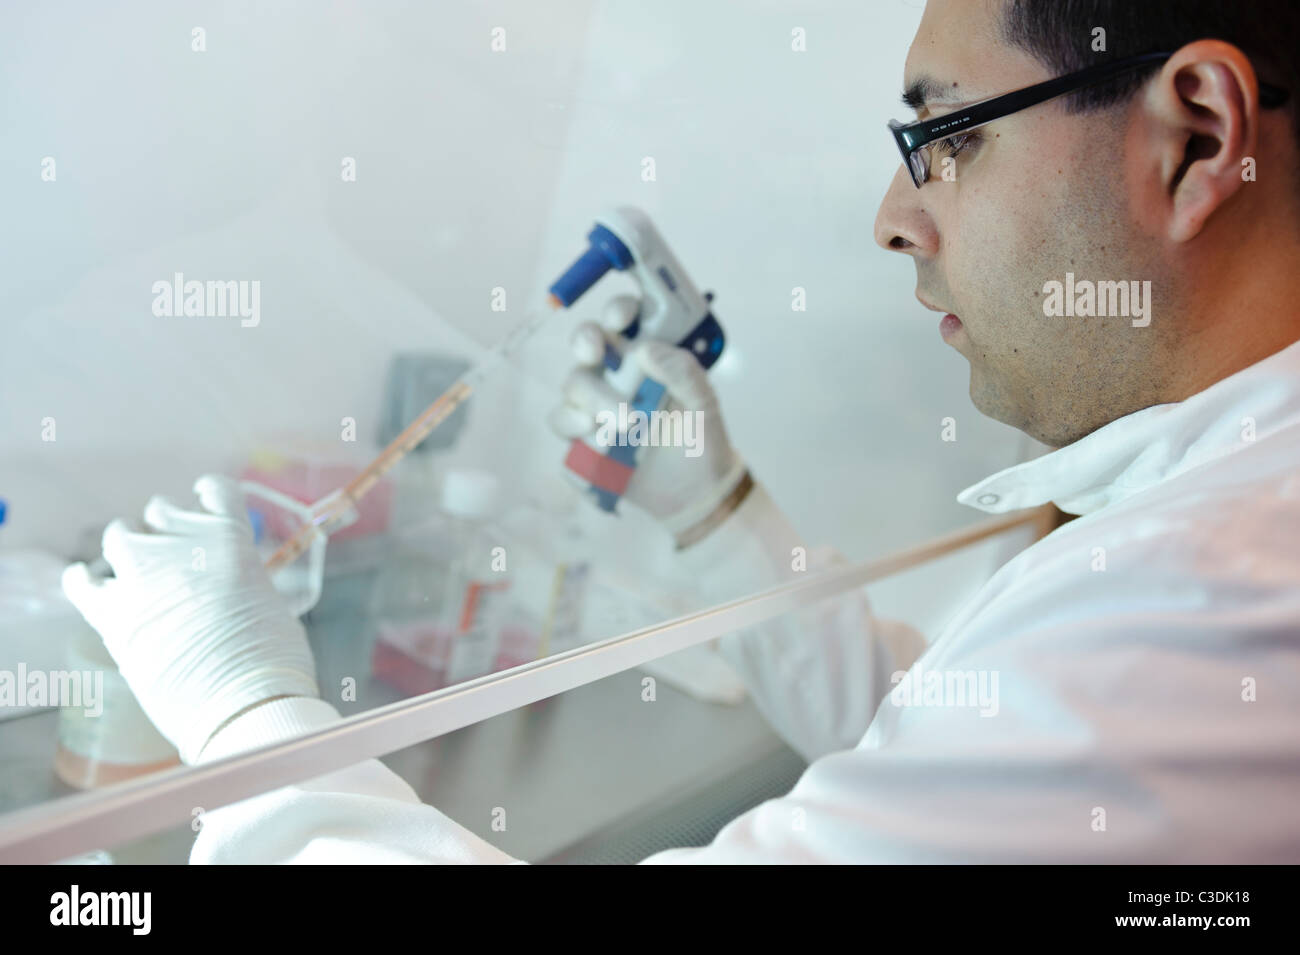 Male scientist sarrau blanc gants blancs et verres travaillant au pipetage hotte de liquides dans des flacons de laboratoire en sciences Banque D'Images